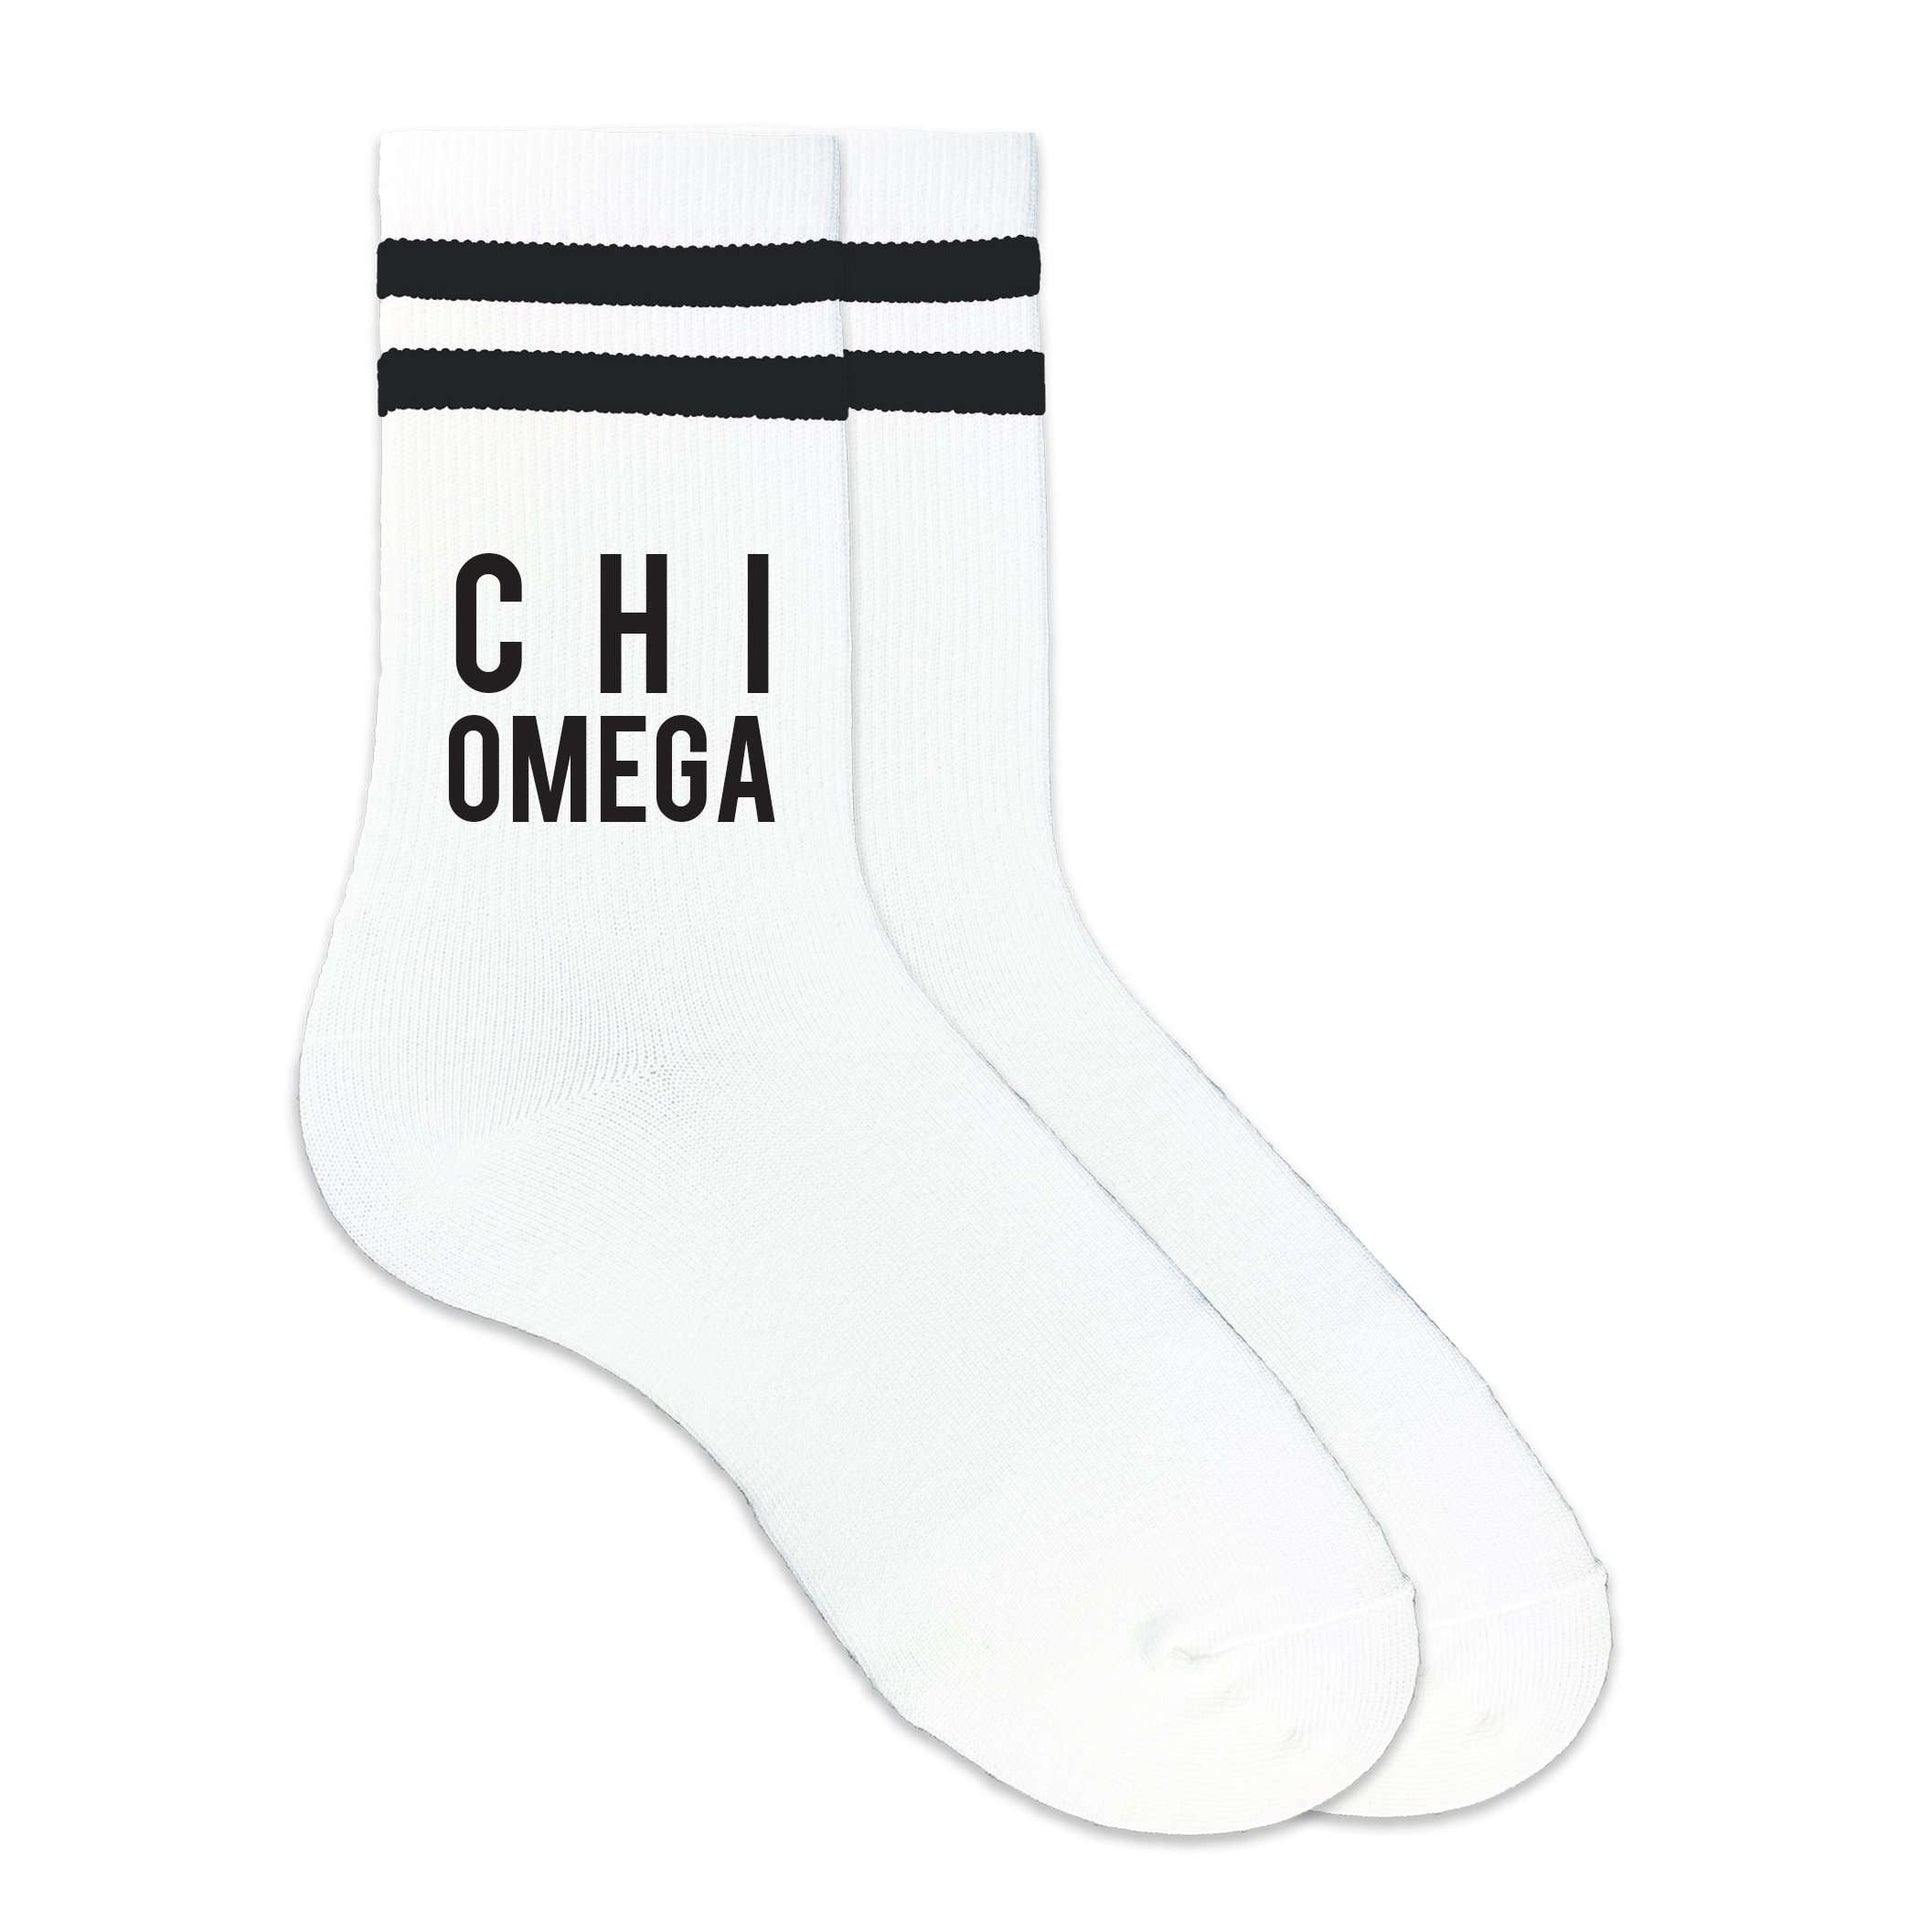 Chi Omega sorority name custom printed on black striped crew socks